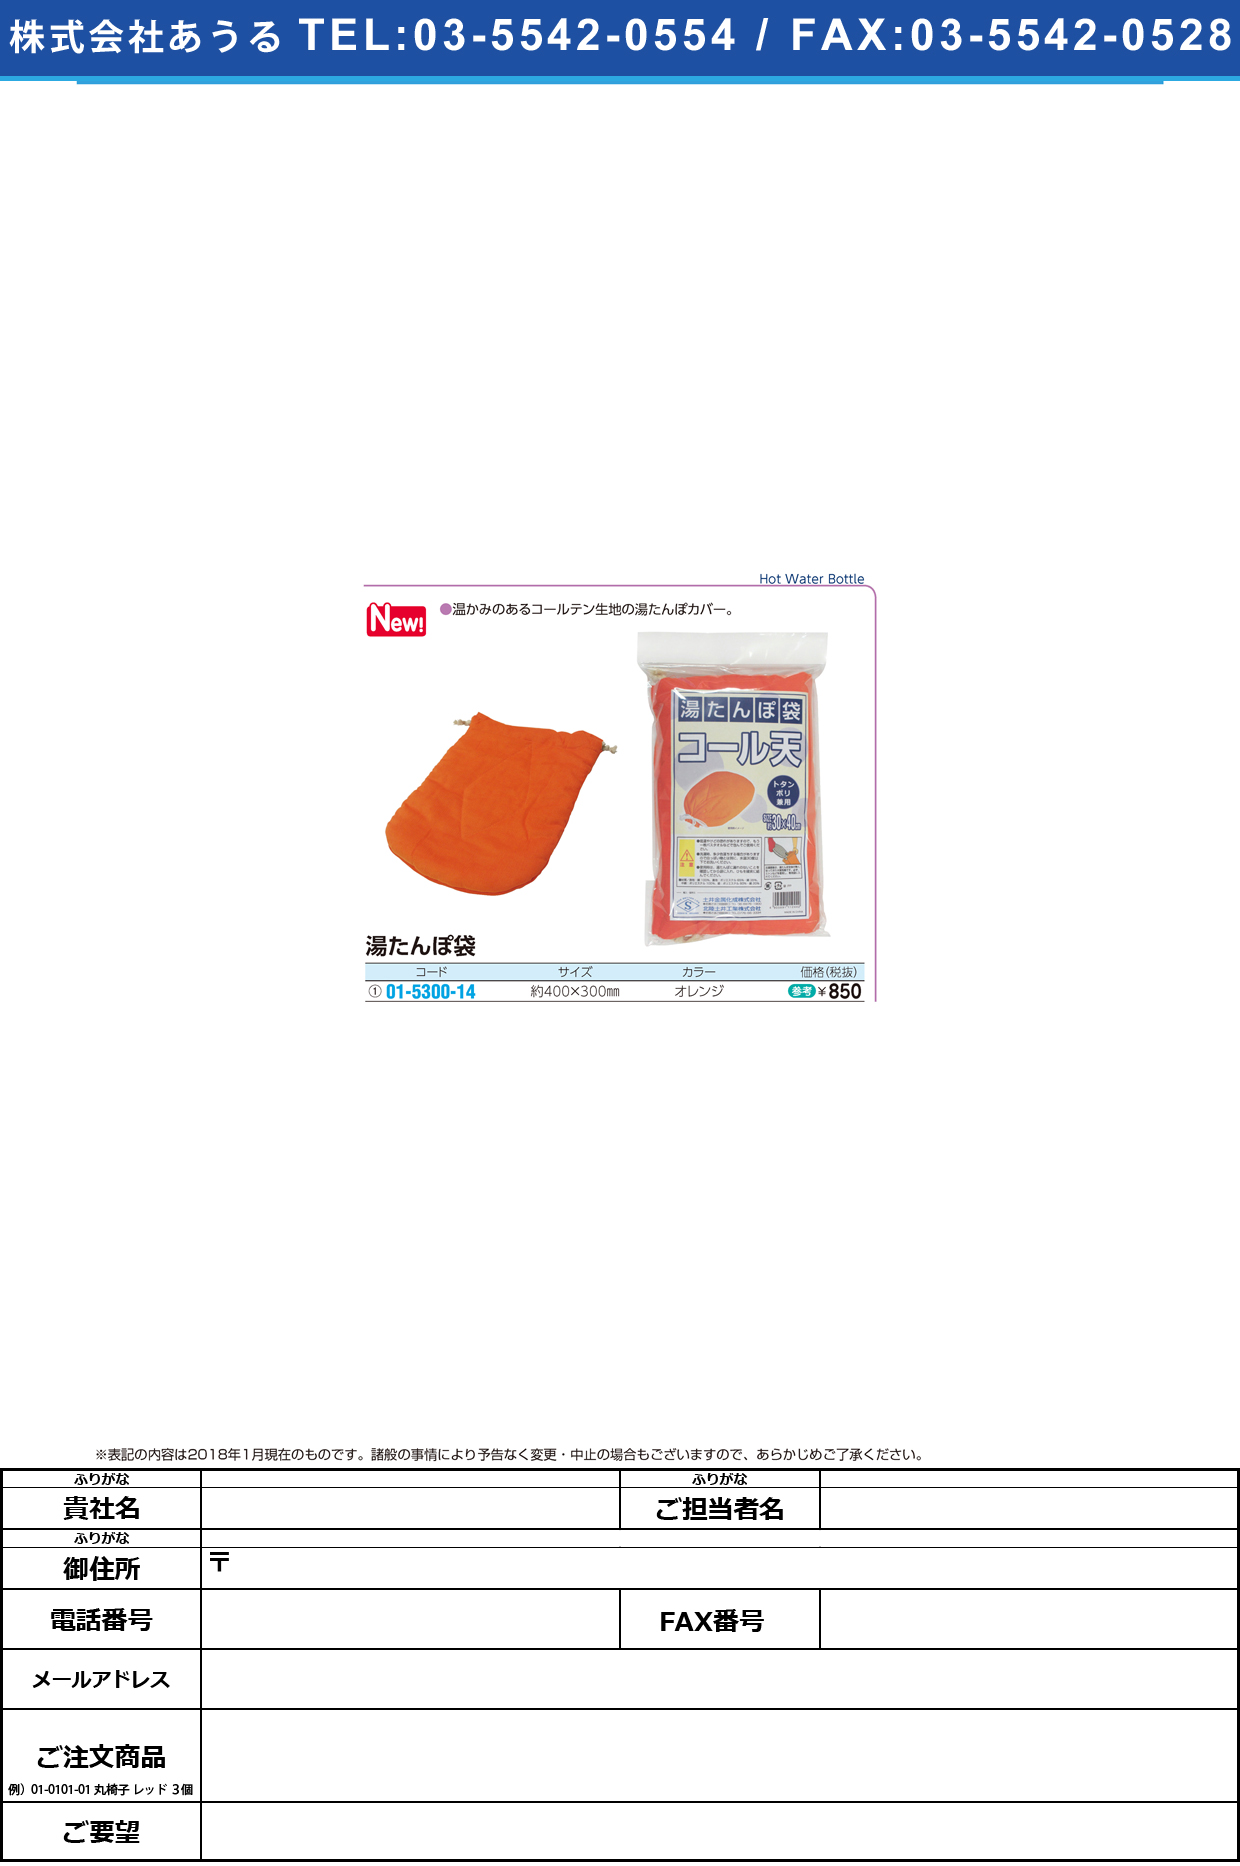 (01-5300-14)湯たんぽ袋 ｺｰﾙﾃﾝ(ｵﾚﾝｼﾞ) ﾕﾀﾝﾎﾟﾌﾞｸﾛ【1個単位】【2019年カタログ商品】